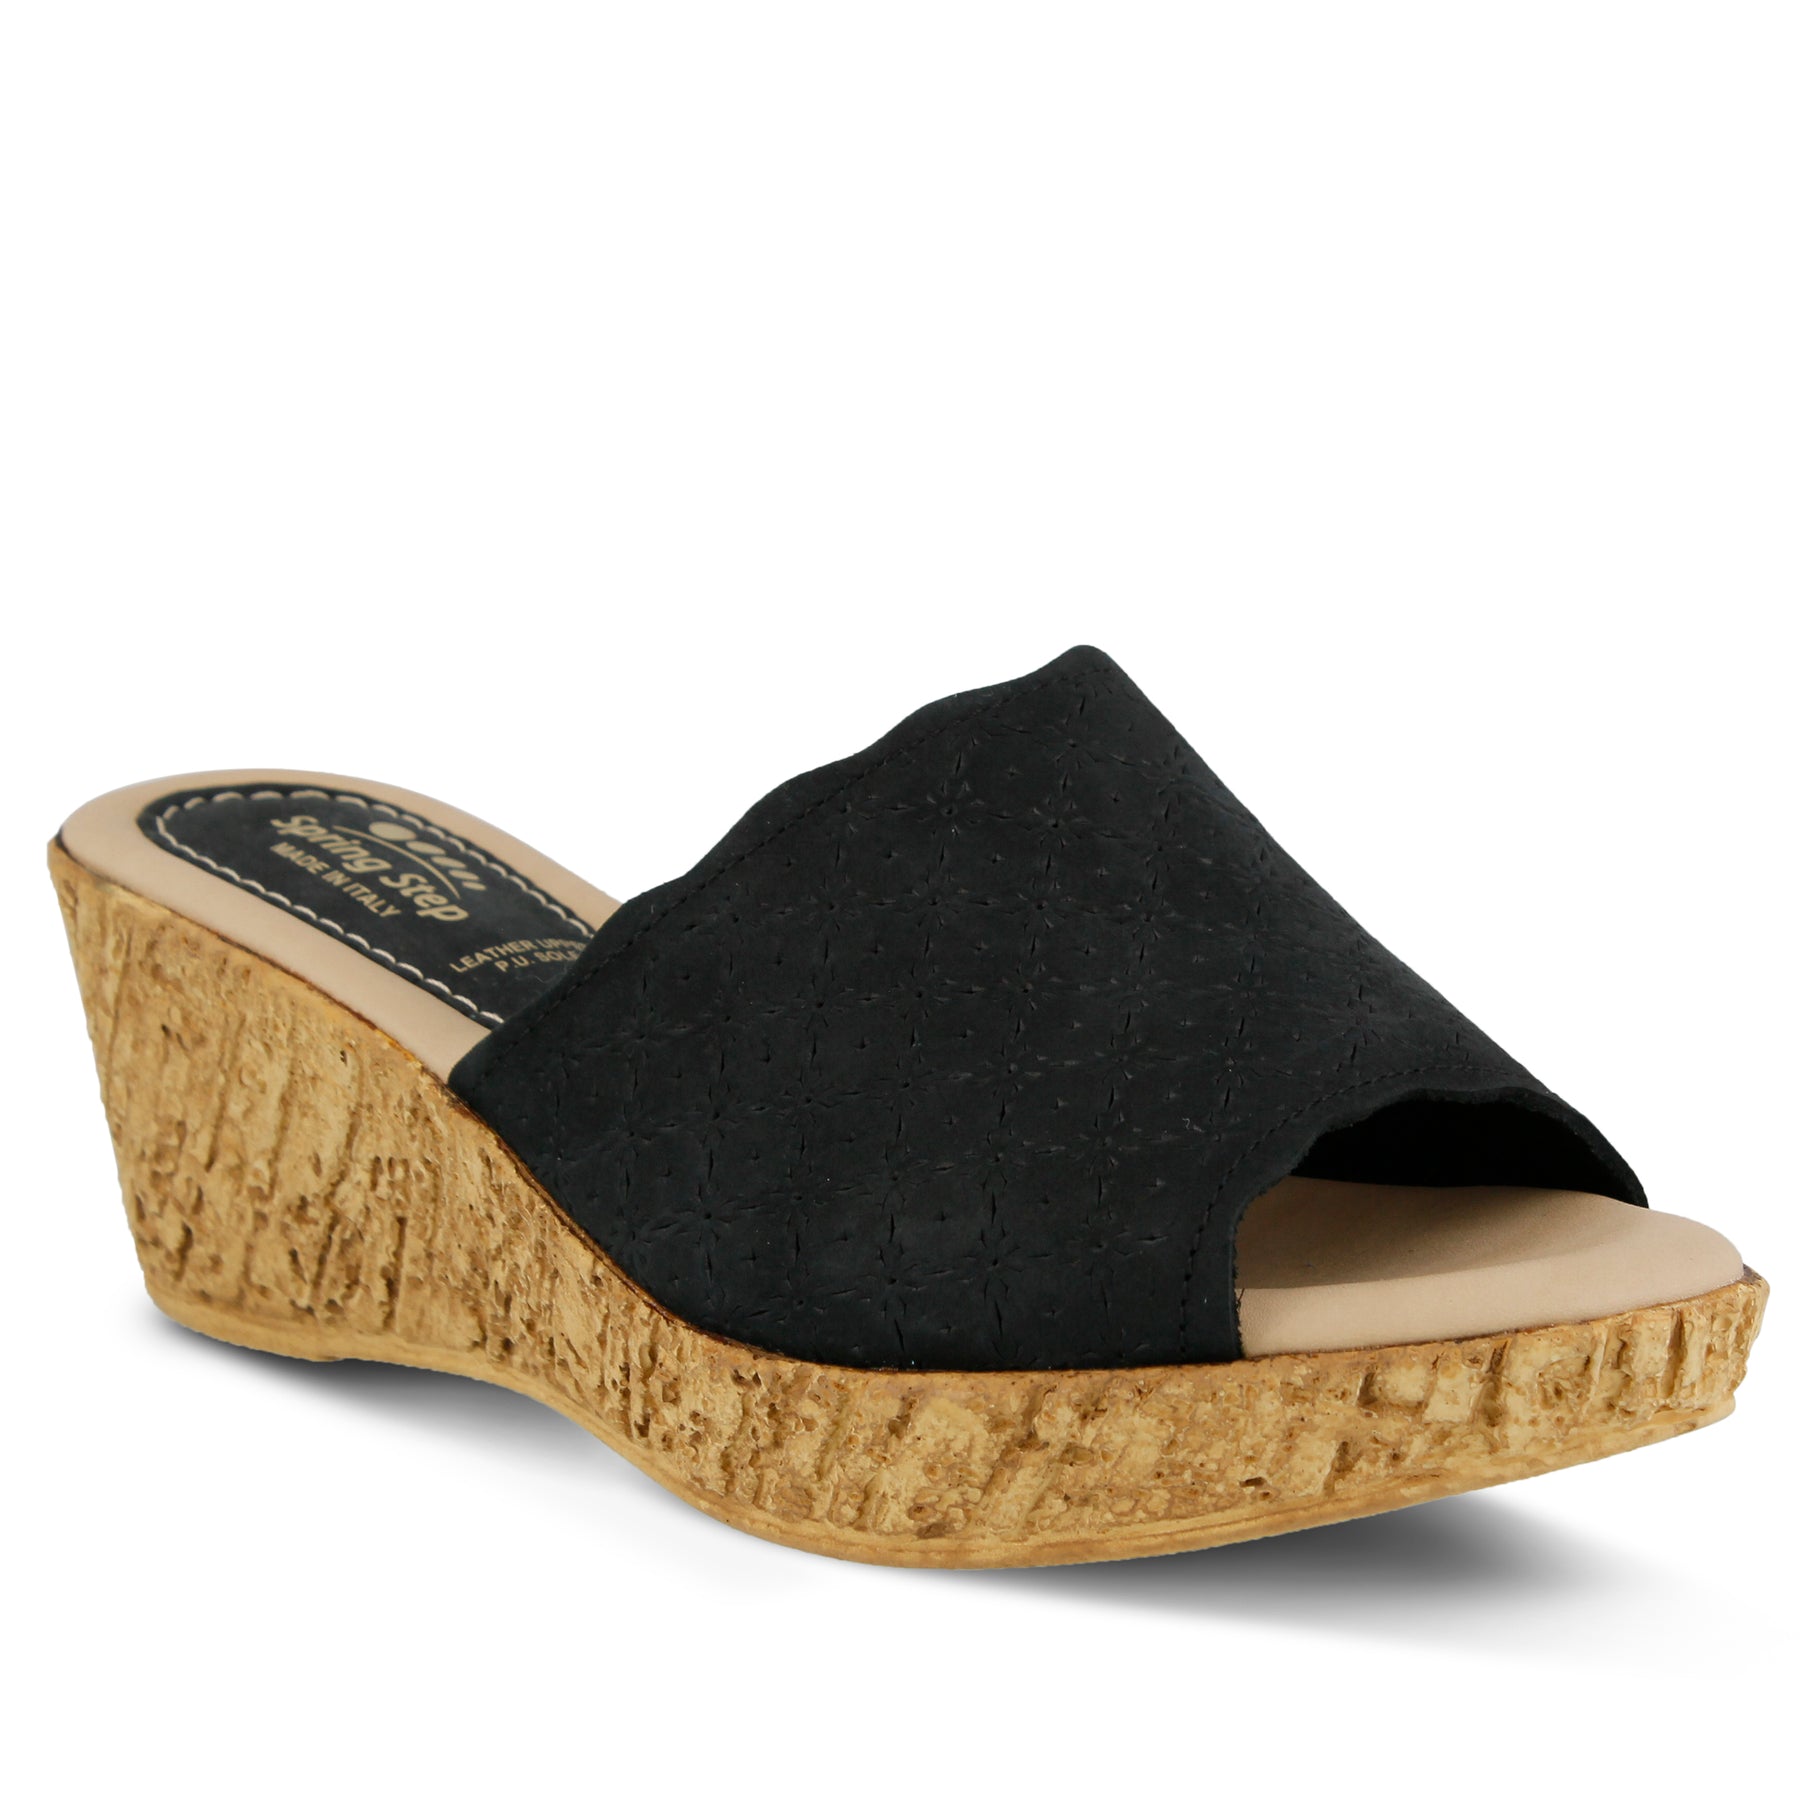 BLACK PALA SLIDE SANDAL by SPRING STEP – Spring Step Shoes